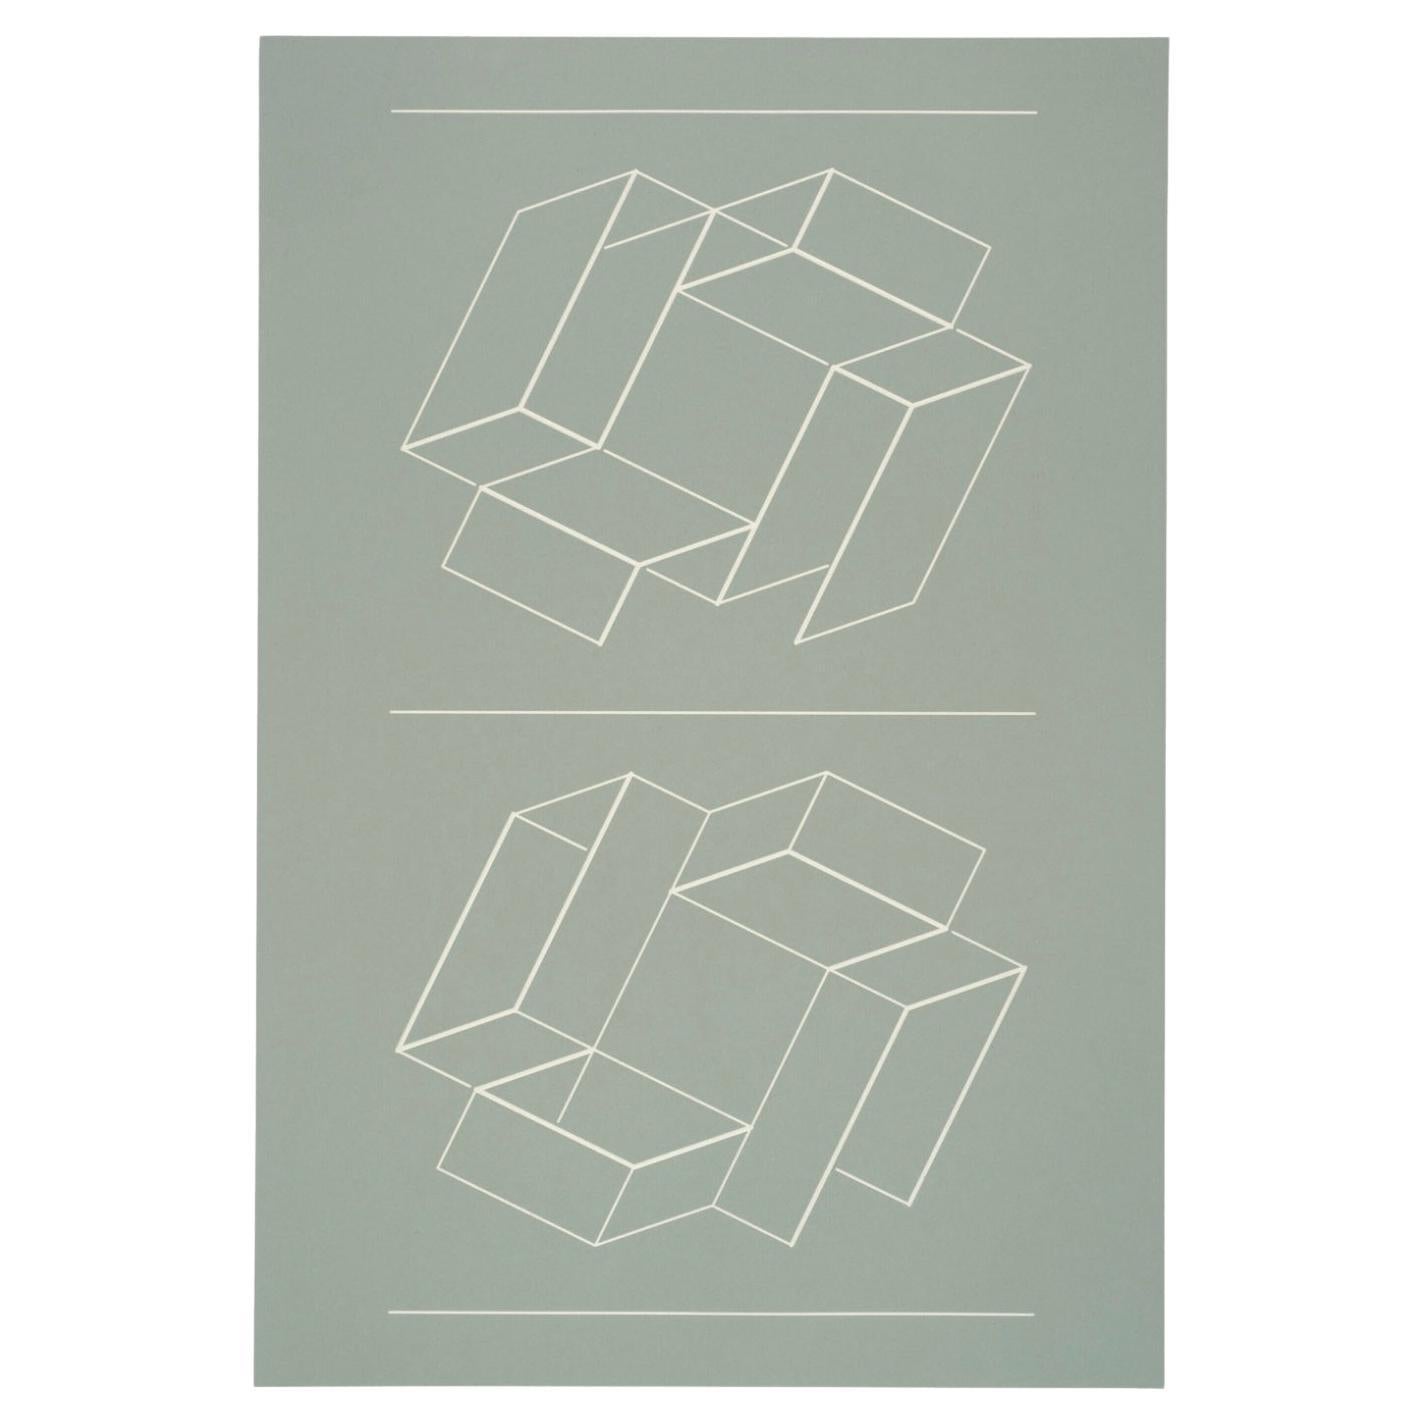 Josef Albers from White Embossings on Gray Series, Print II